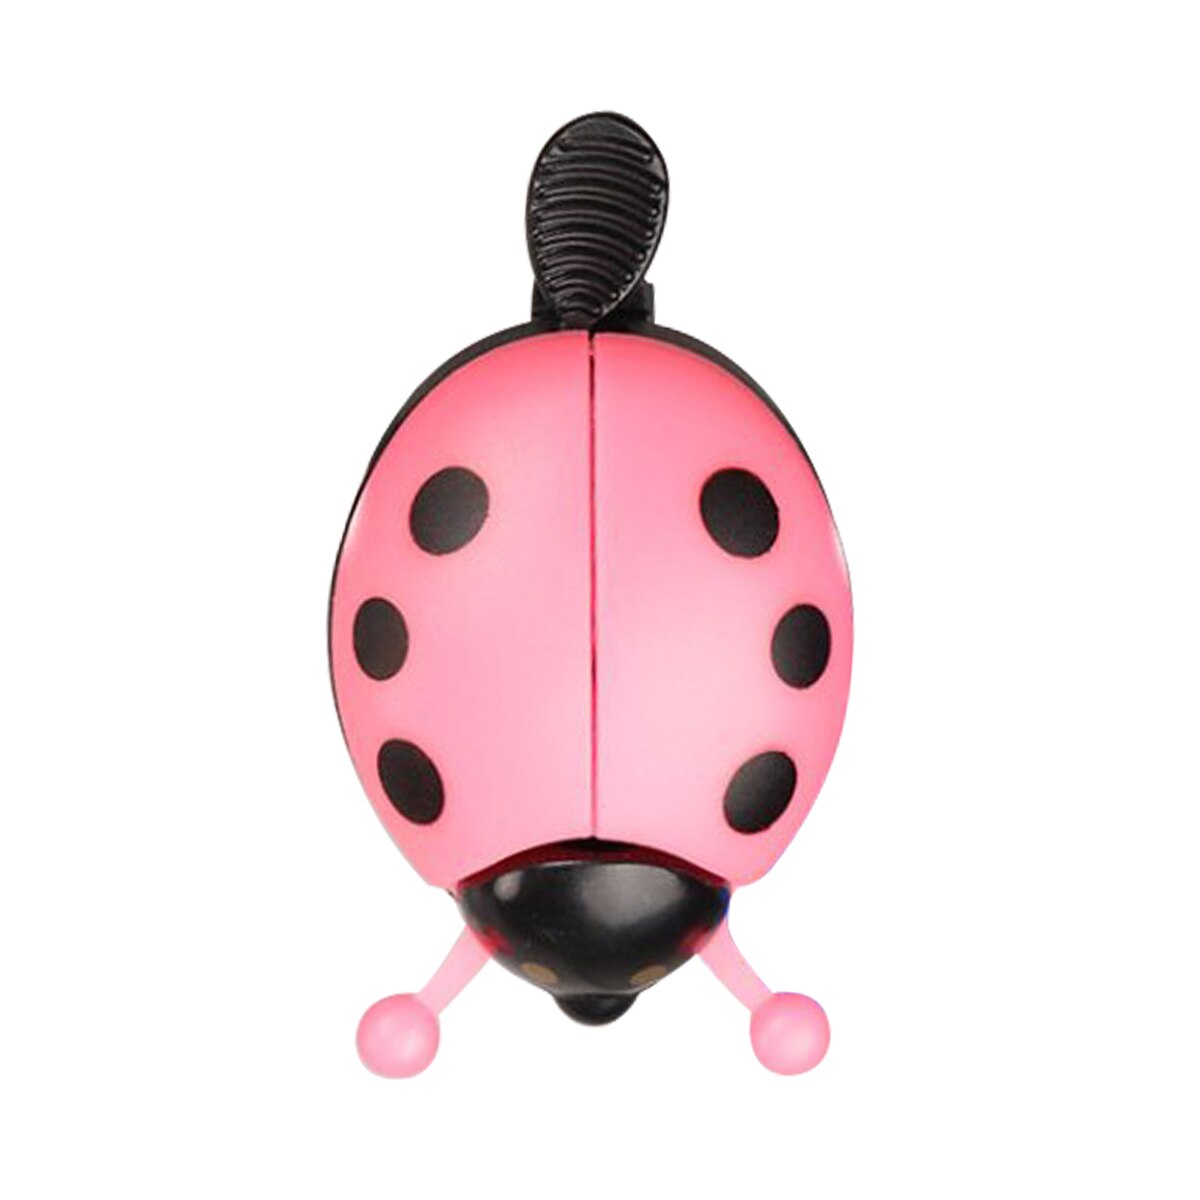 Fietsbel Kever Cartoon Fietsen Bell Mooie Kids Grappige Lieveheersbeestje Bell Ring Voor Bike Rijden Hoorn Fiets Accessoires: Pink